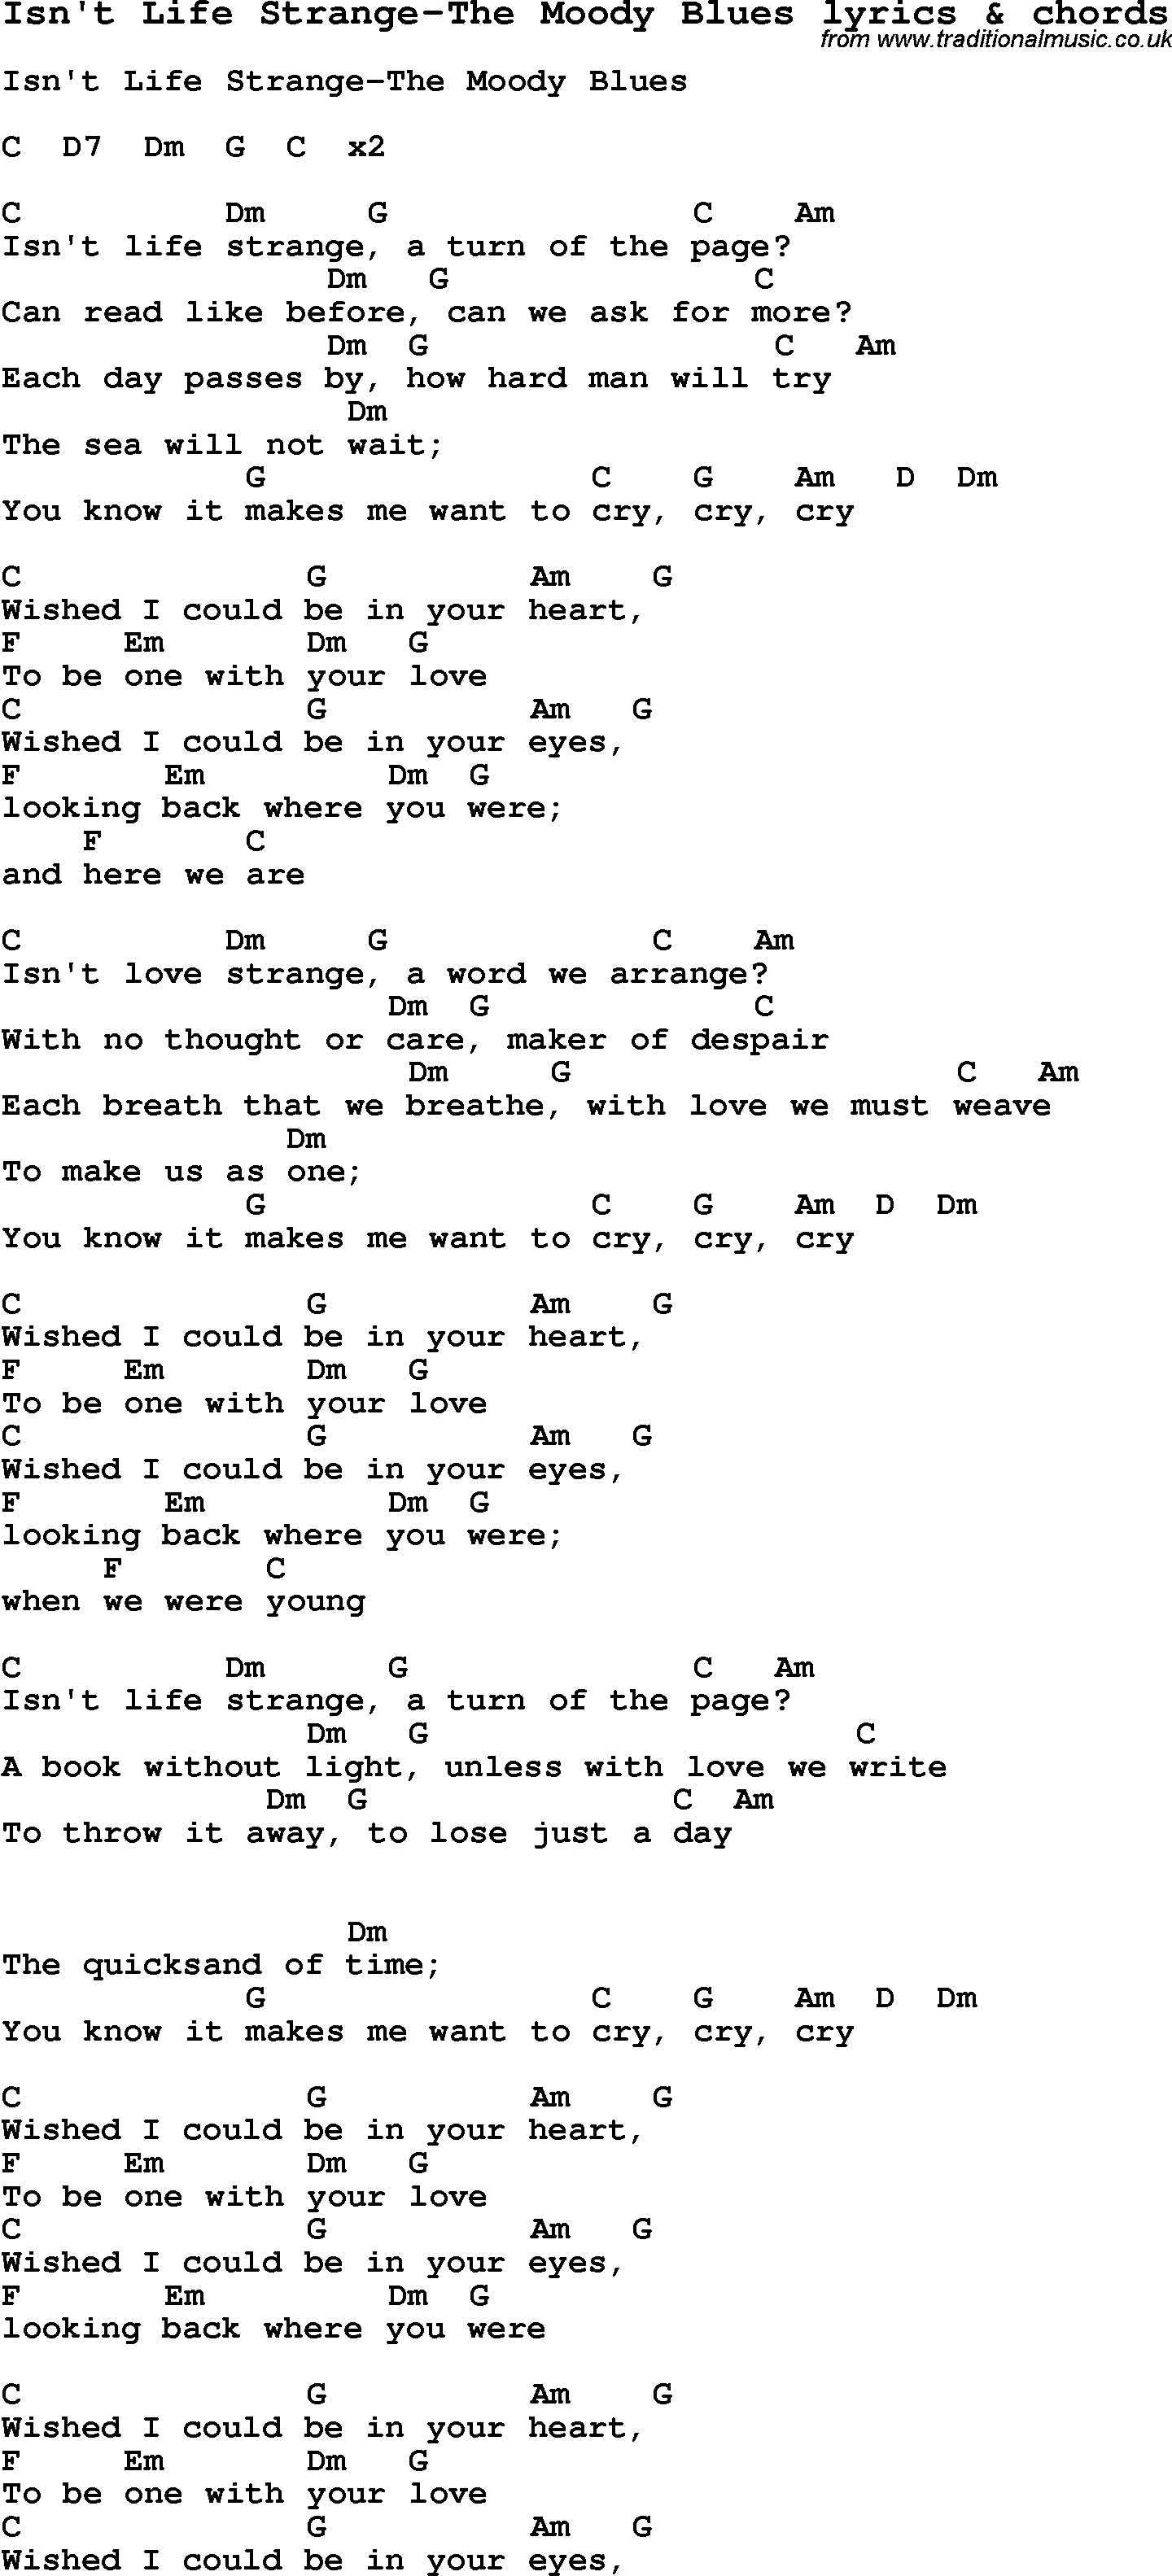 Love Song Lyrics for: Isn't Life Strange-The Moody Blues with chords for Ukulele, Guitar Banjo etc.